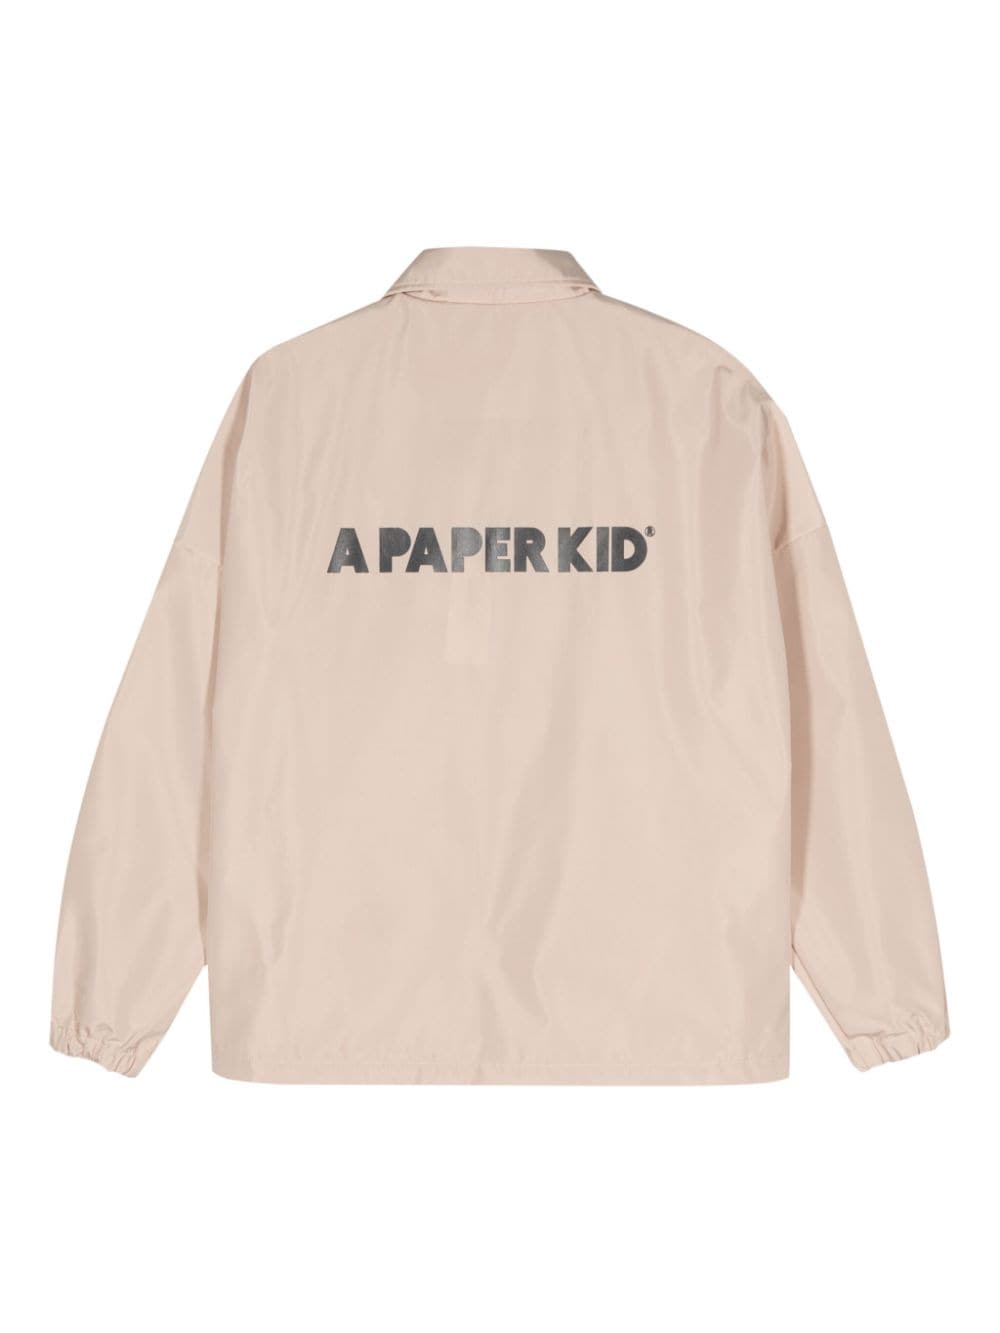 A Paper Kid logo-print press-stud shirt jacket - Beige